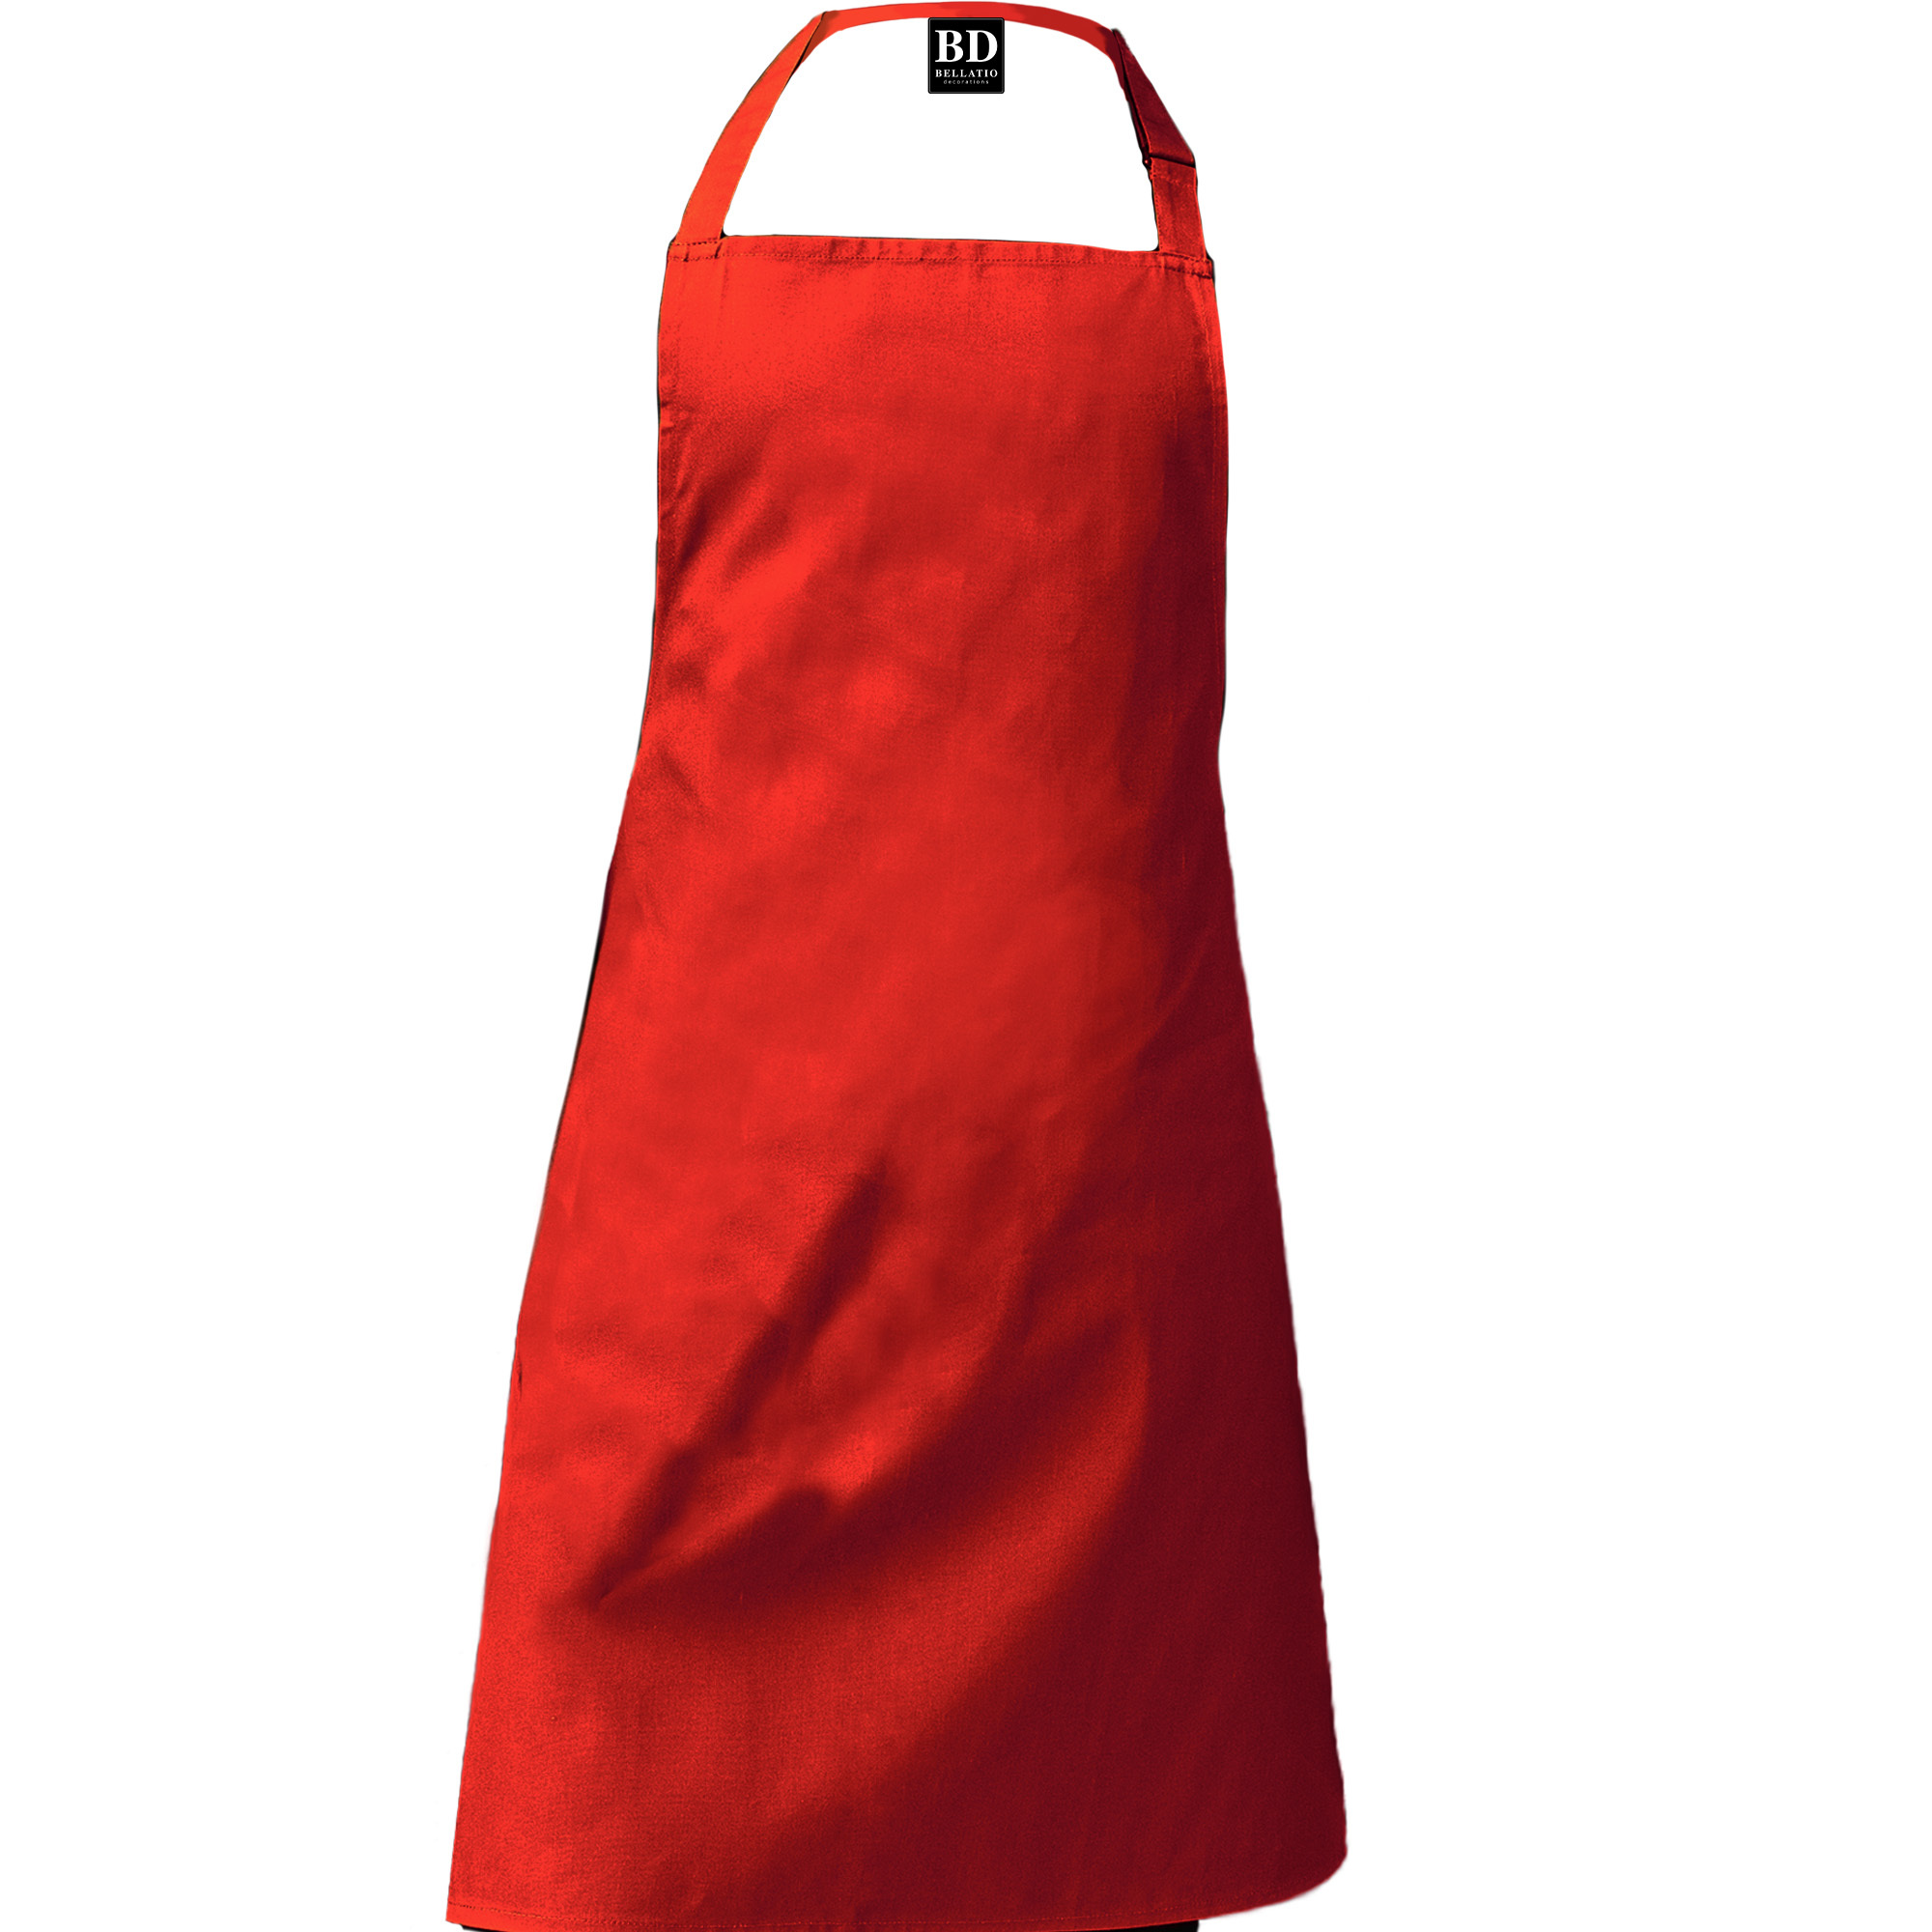 Top kokkie barbeque schort / keukenschort rood voor heren